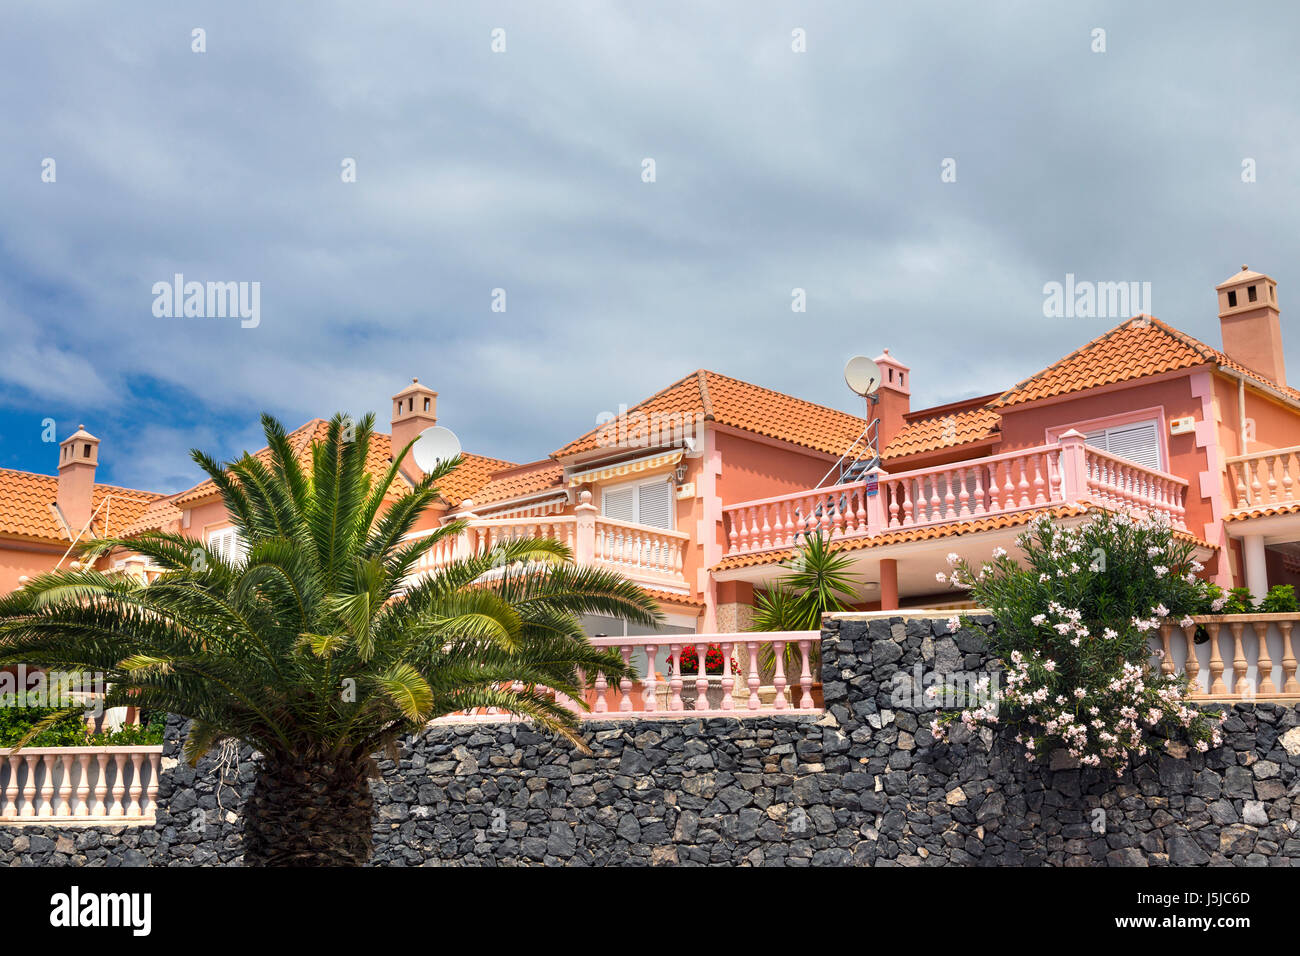 Appartements de vacances colorées à Costa Adeje, Tenerife, Espagne Banque D'Images